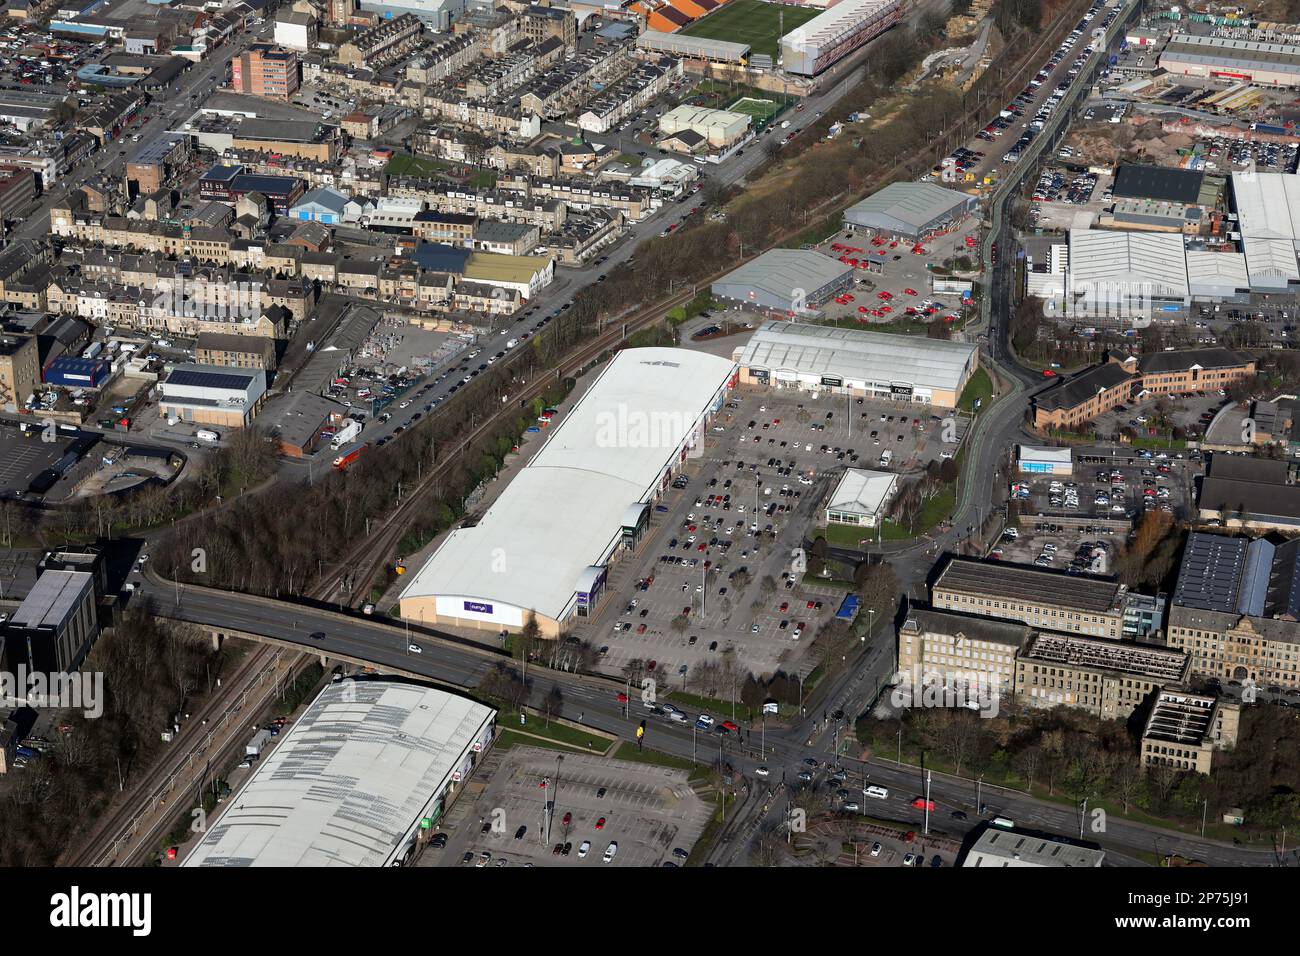 Vue aérienne du parc commercial Forster Square à Bradford, West Yorkshire, Royaume-Uni Banque D'Images